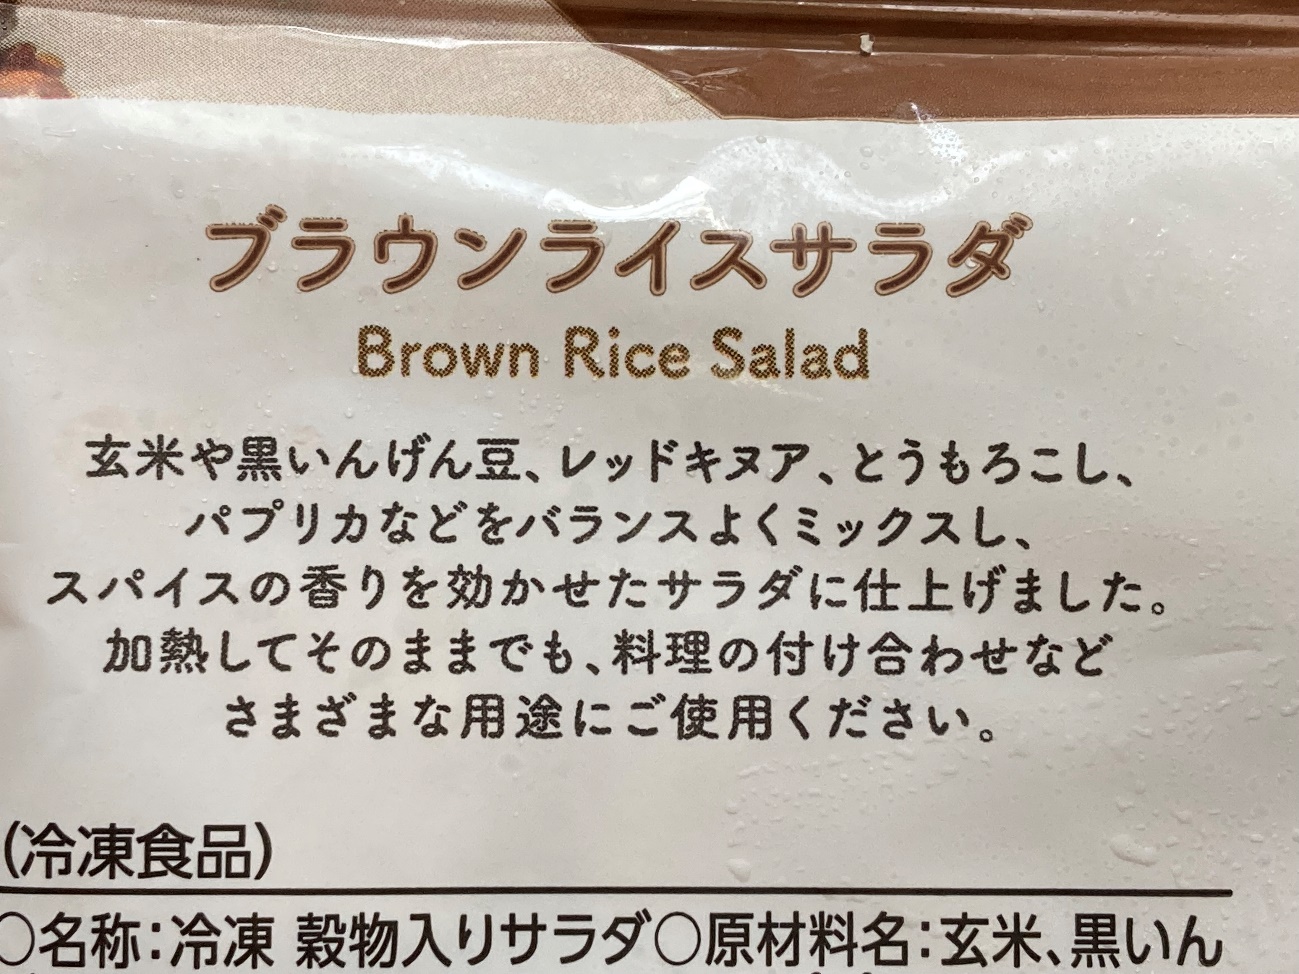 業務スーパーのブラウンライスサラダのパッケージ裏面にある商品説明文